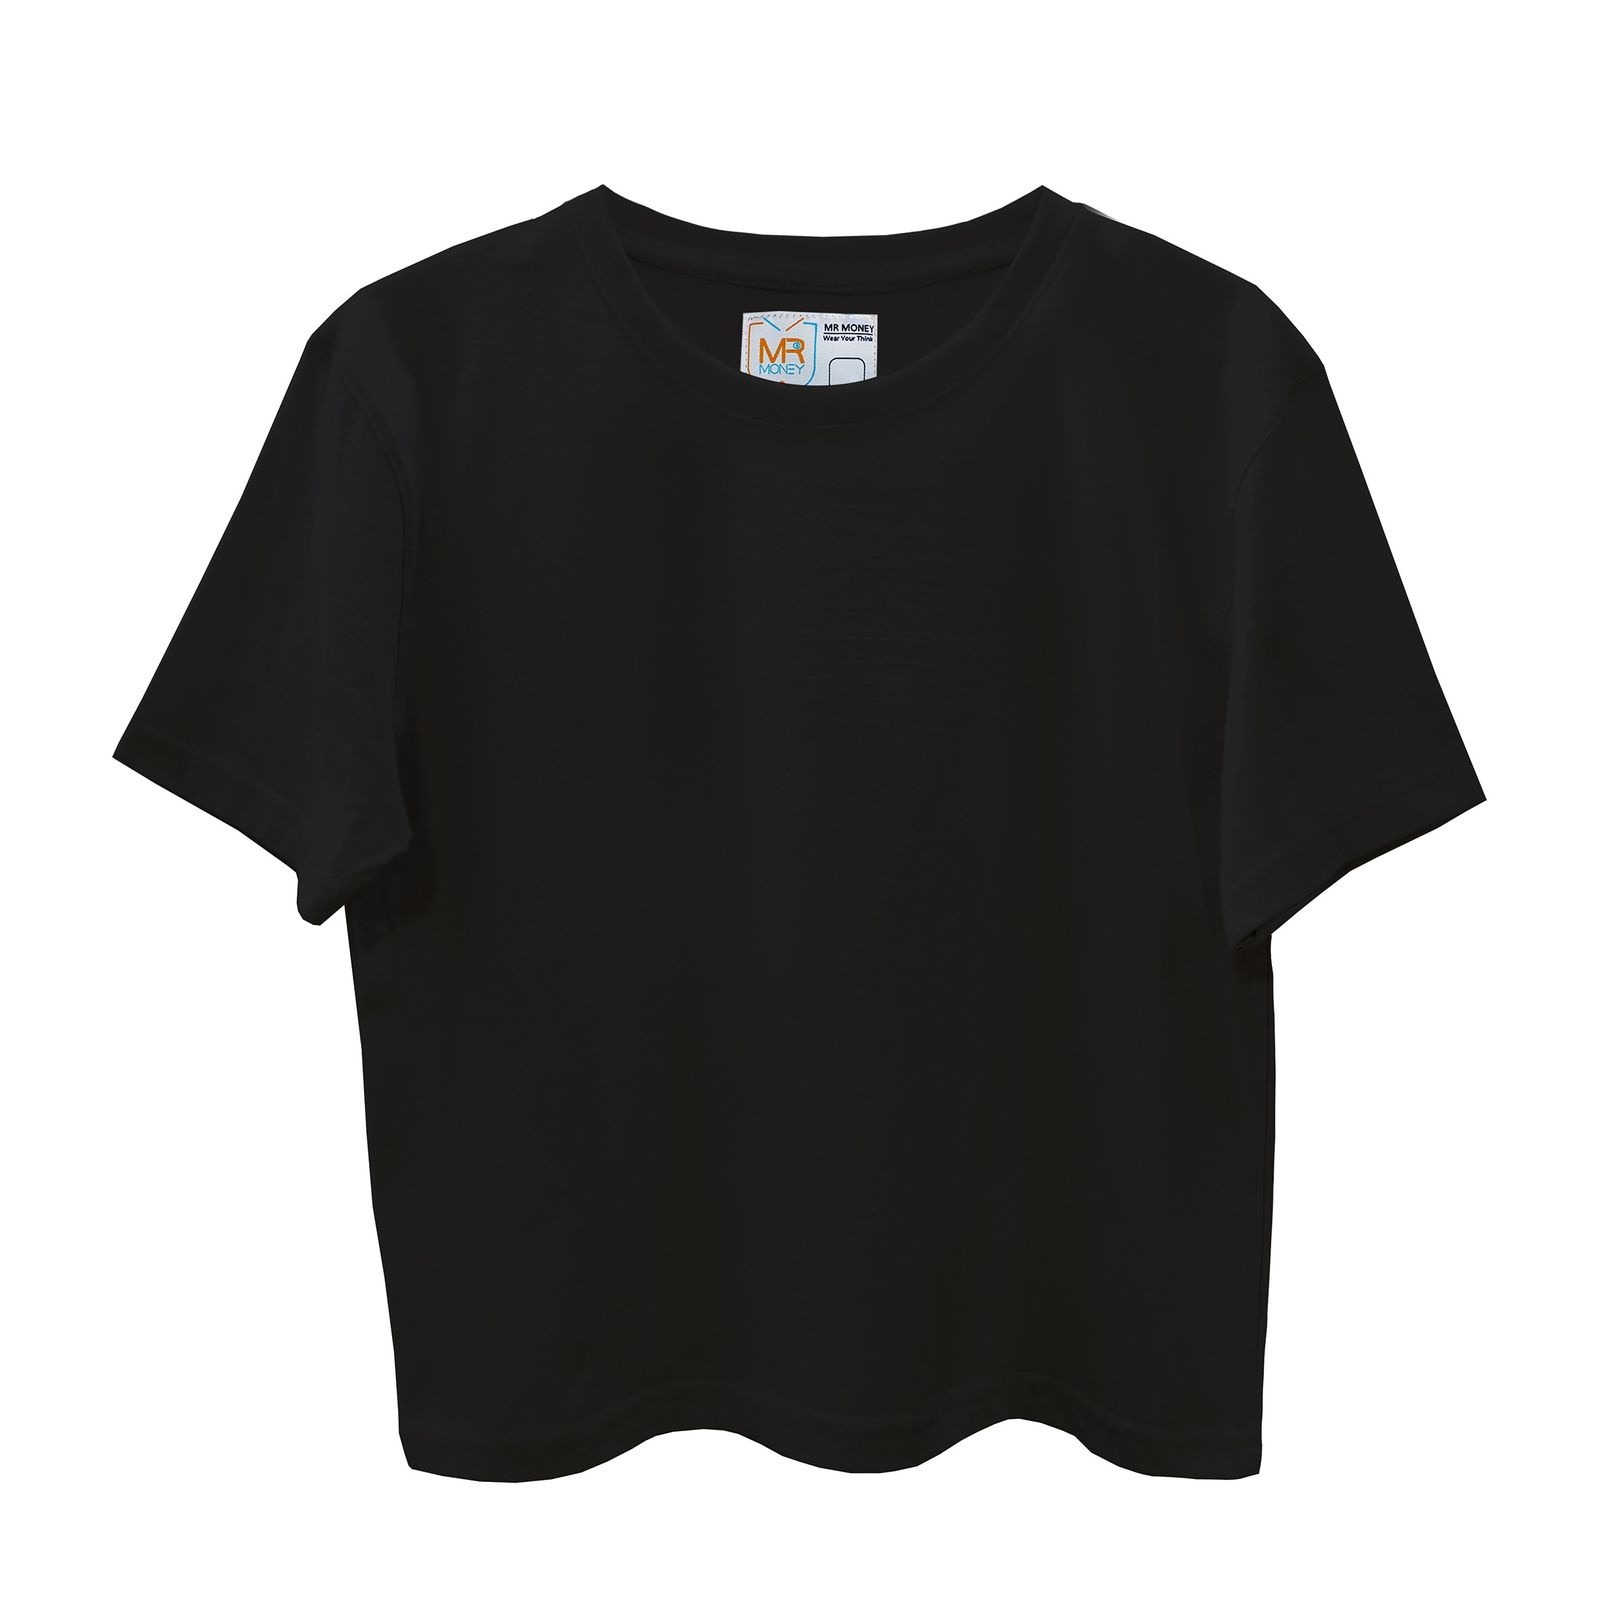 تی شرت آستین کوتاه زنانه مسترمانی مدل ساده کد 402-KM -  - 2